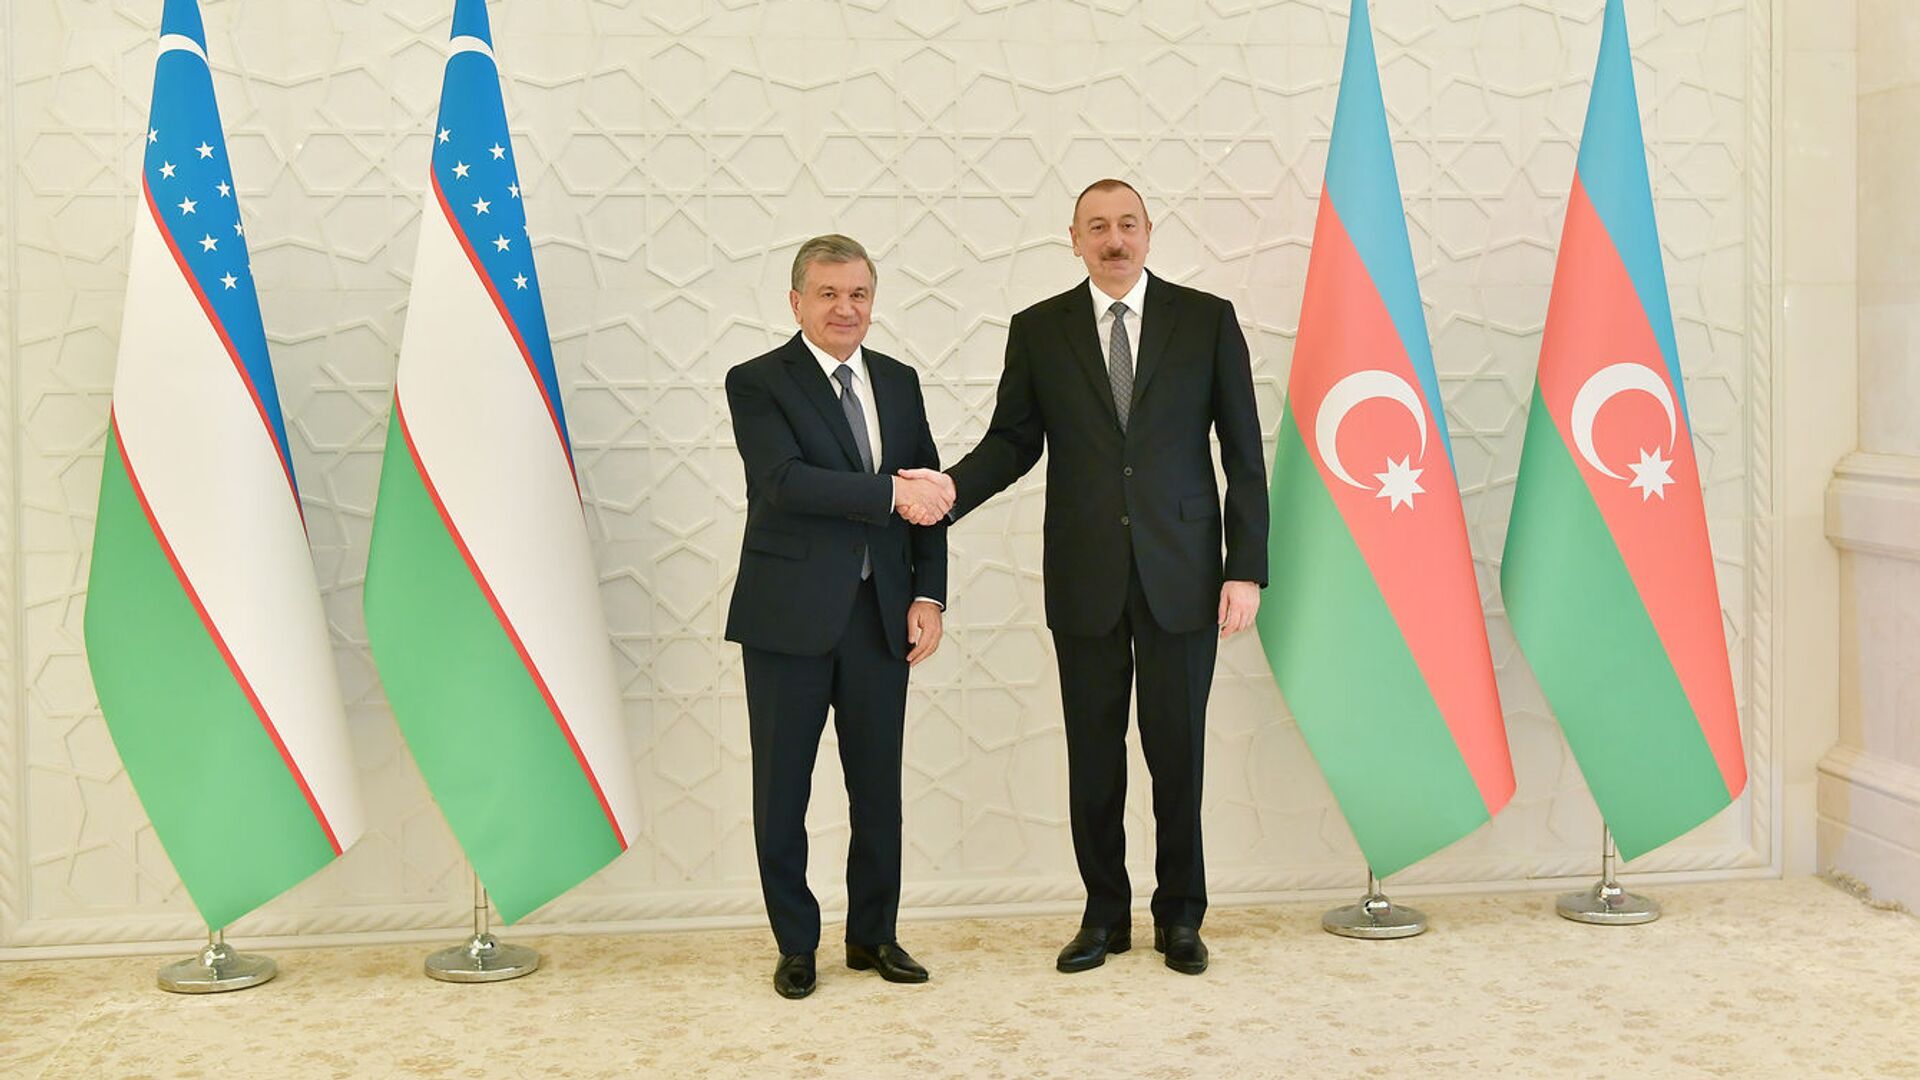 Президент Азербайджана Ильхам Алиев и президент Узбекистана ШавкатаМирзиёев, фото из архива - Sputnik Азербайджан, 1920, 25.10.2021